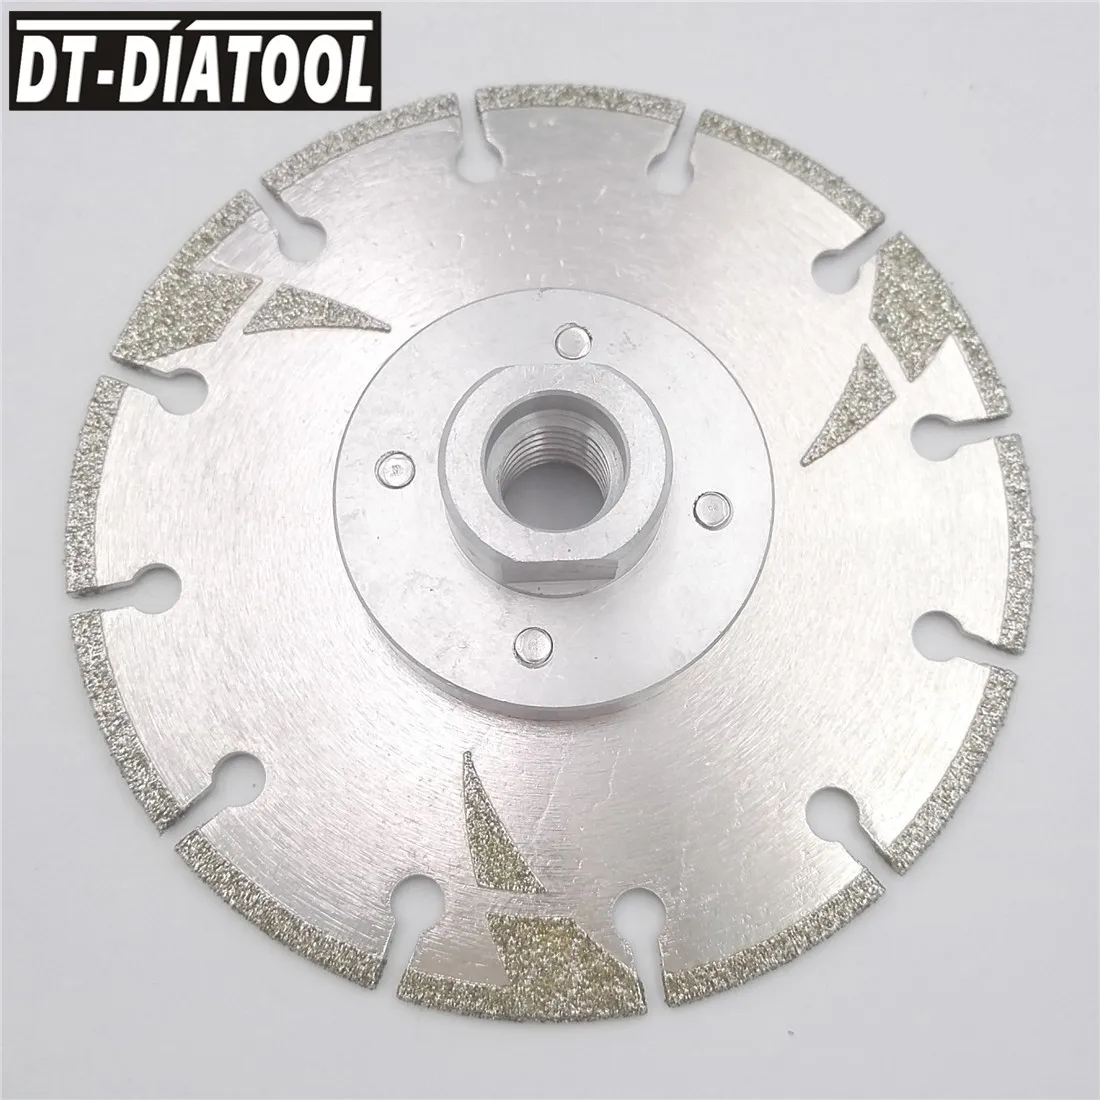 DT-DIATOOL 2 шт диаметр 115 мм Гальванизированный усиленный алмазный режущий диск с резьбой M14 4,5 дюйма пильный диск для плитки мрамора от AliExpress WW